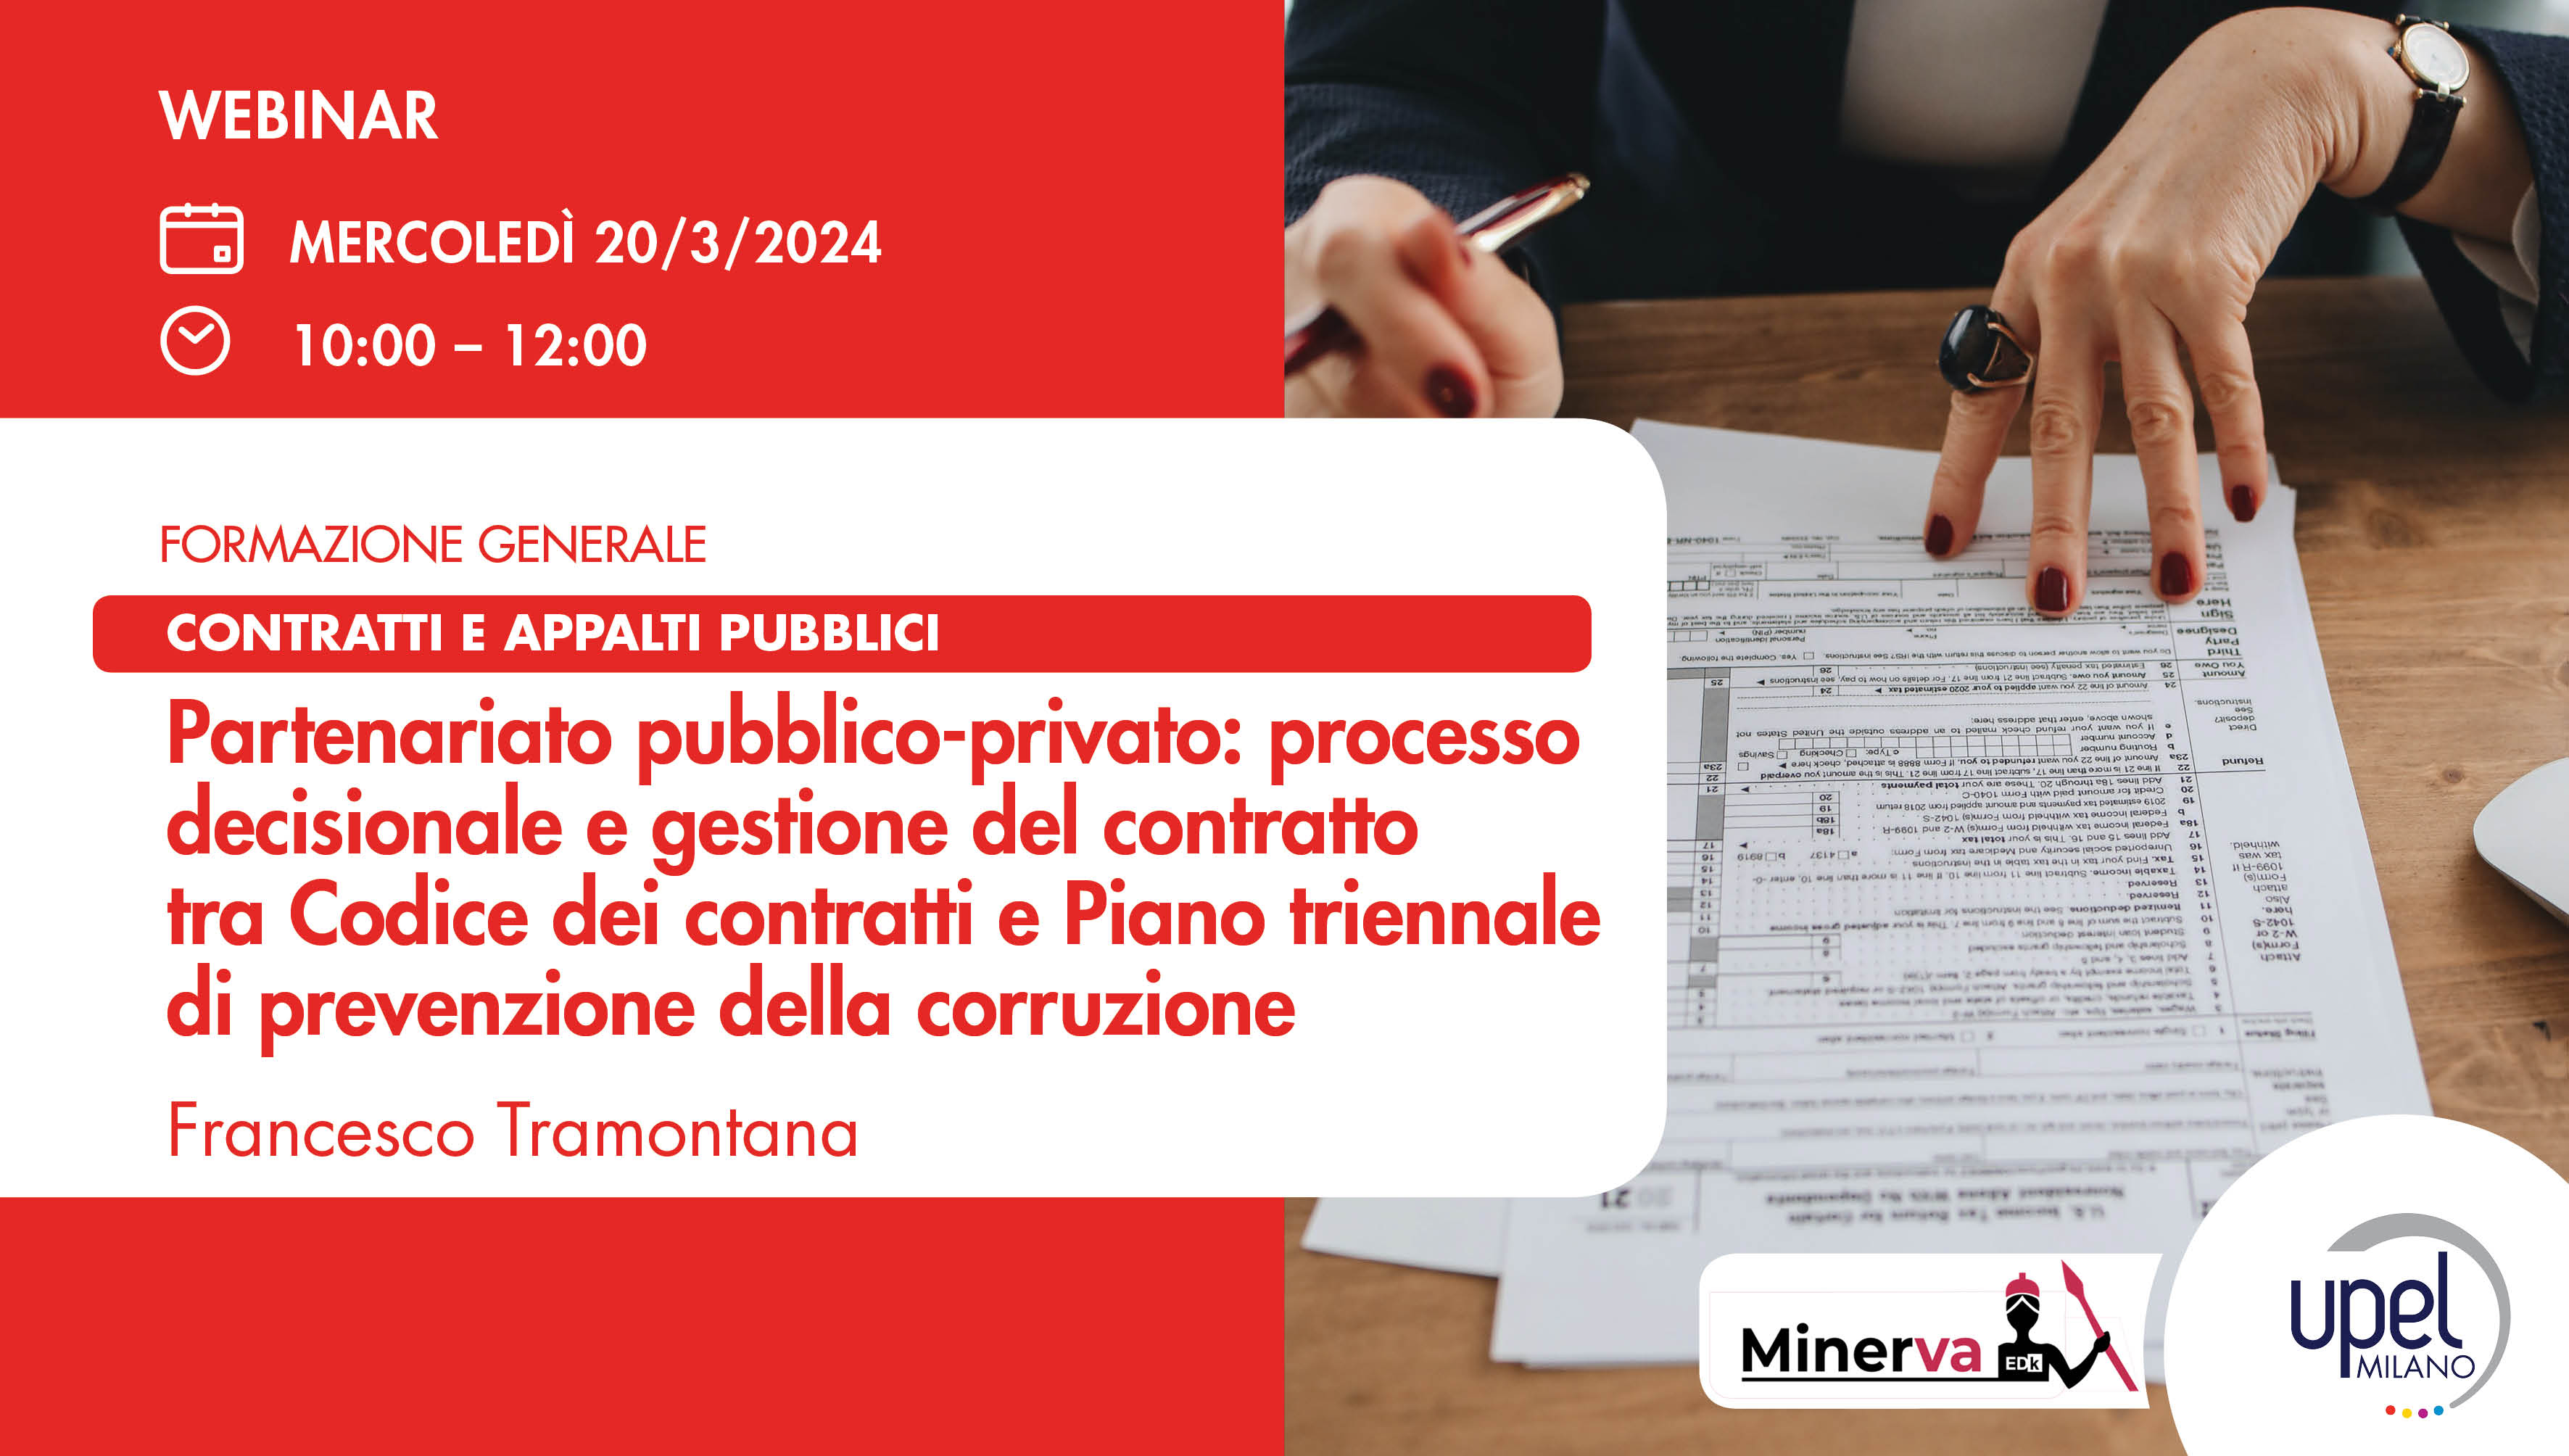 Partenariato pubblico-privato: processo decisionale e gestione del contratto tra Codice dei contratti e Piano triennale di prevenzione della corruzione